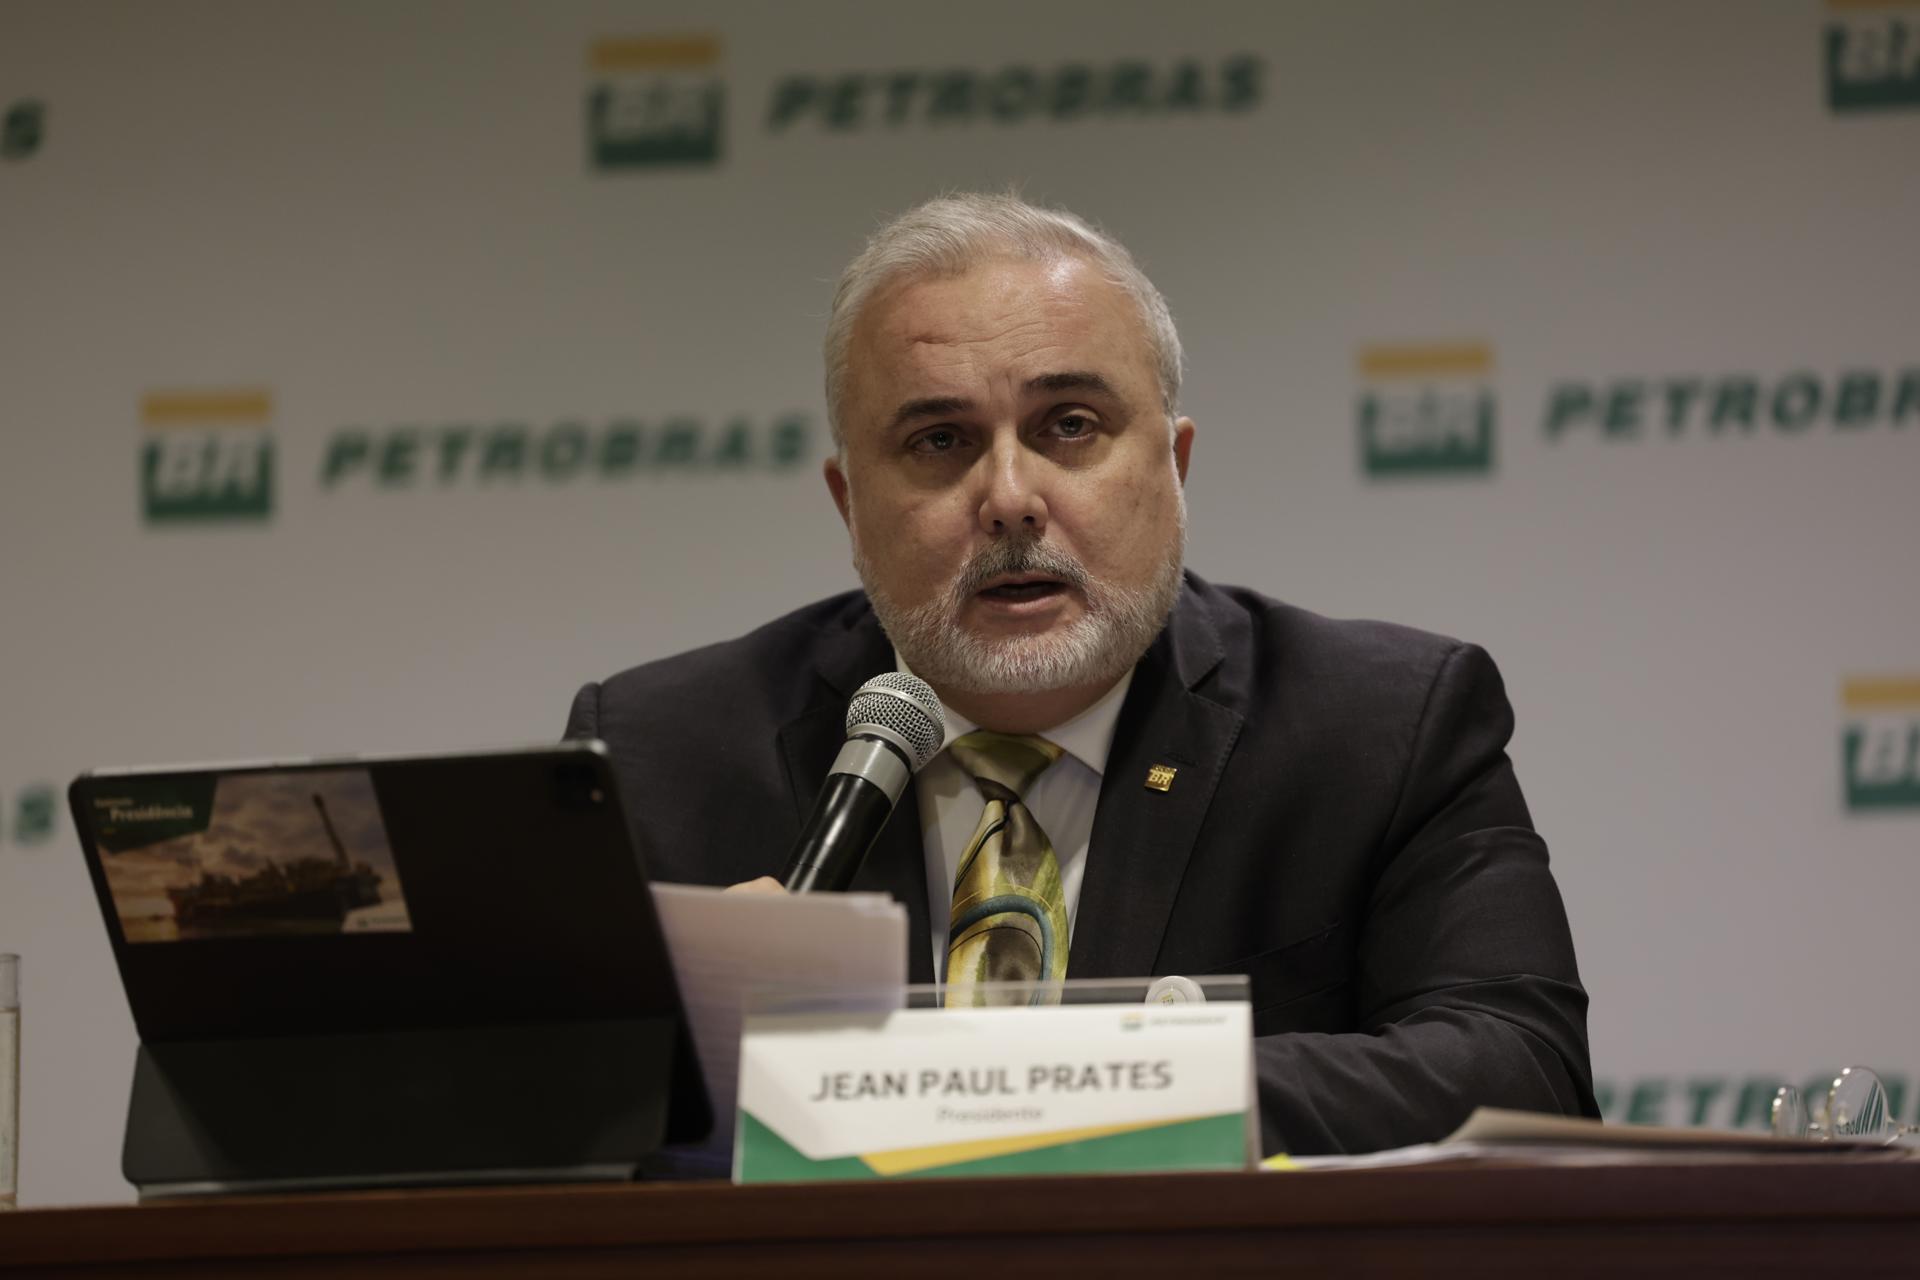 El presidente de la compañía Petrobras, Jean Paul Prates, participa en una rueda de prensa sobre los resultados financieros de la empresa hoy, en Río de Janeiro (Brasil). EFE/Antonio Lacerda